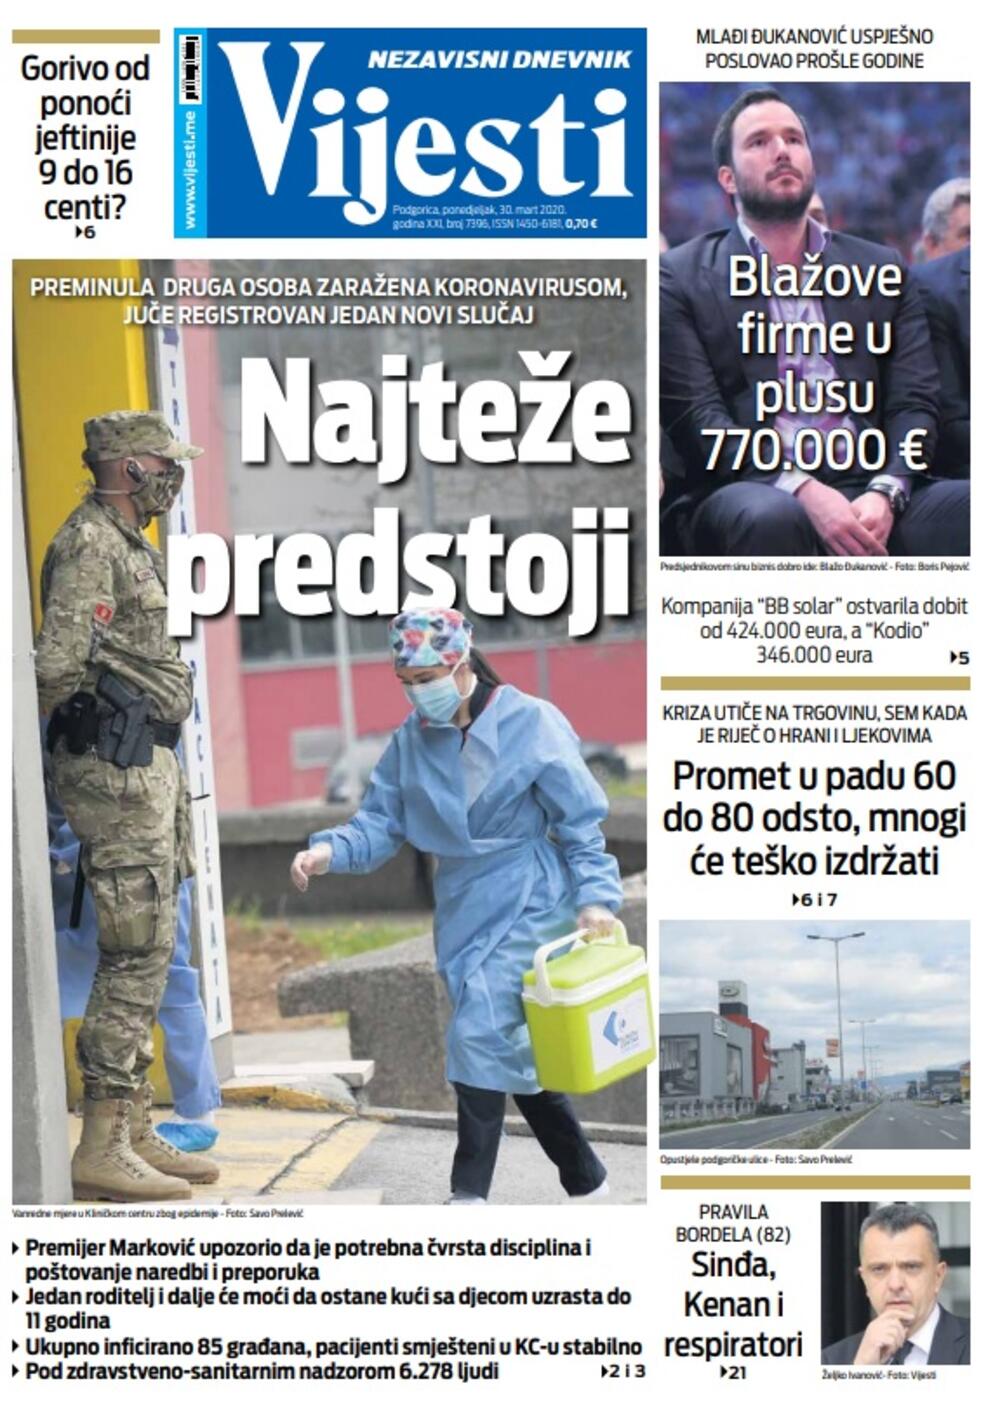 Naslovna strana "Vijesti" za ponedjeljak 30. mart 2020. godine, Foto: Vijesti